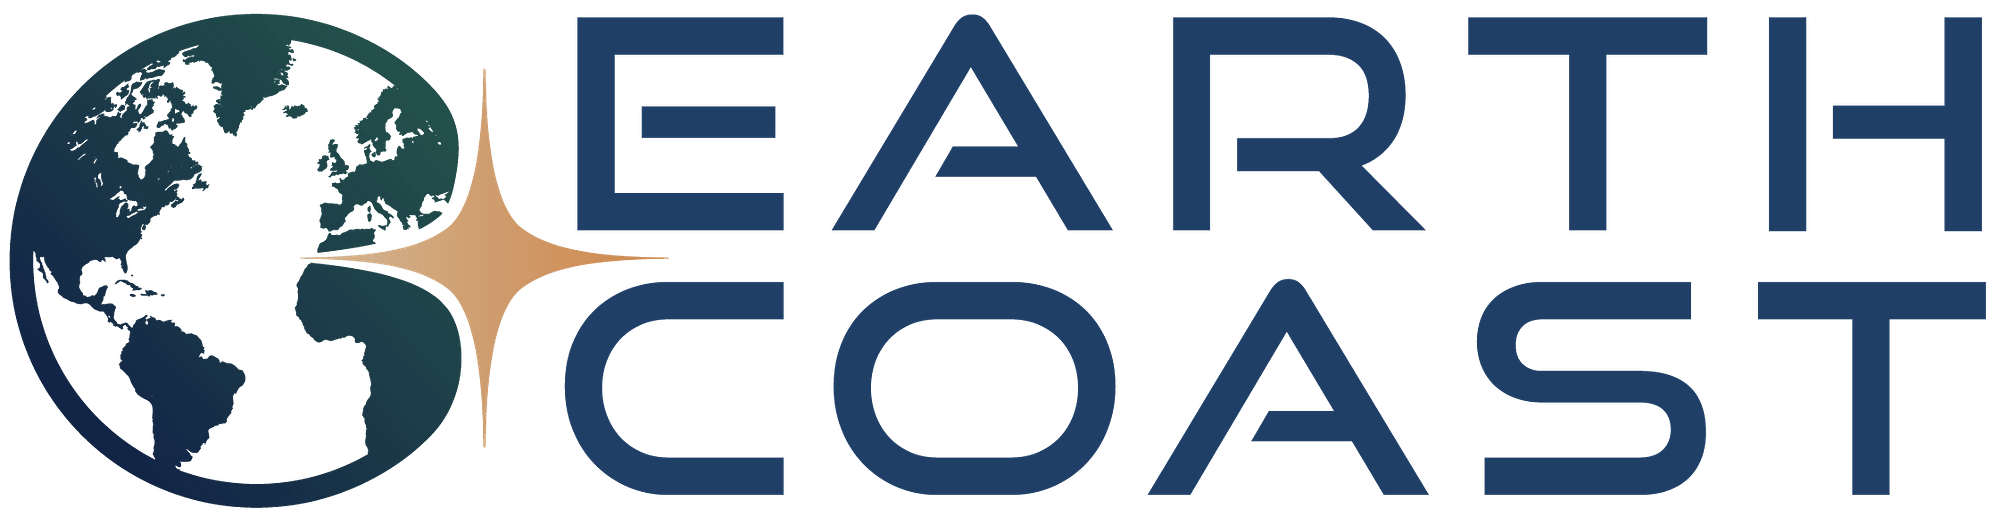 Earth Coast Logo - Main Color